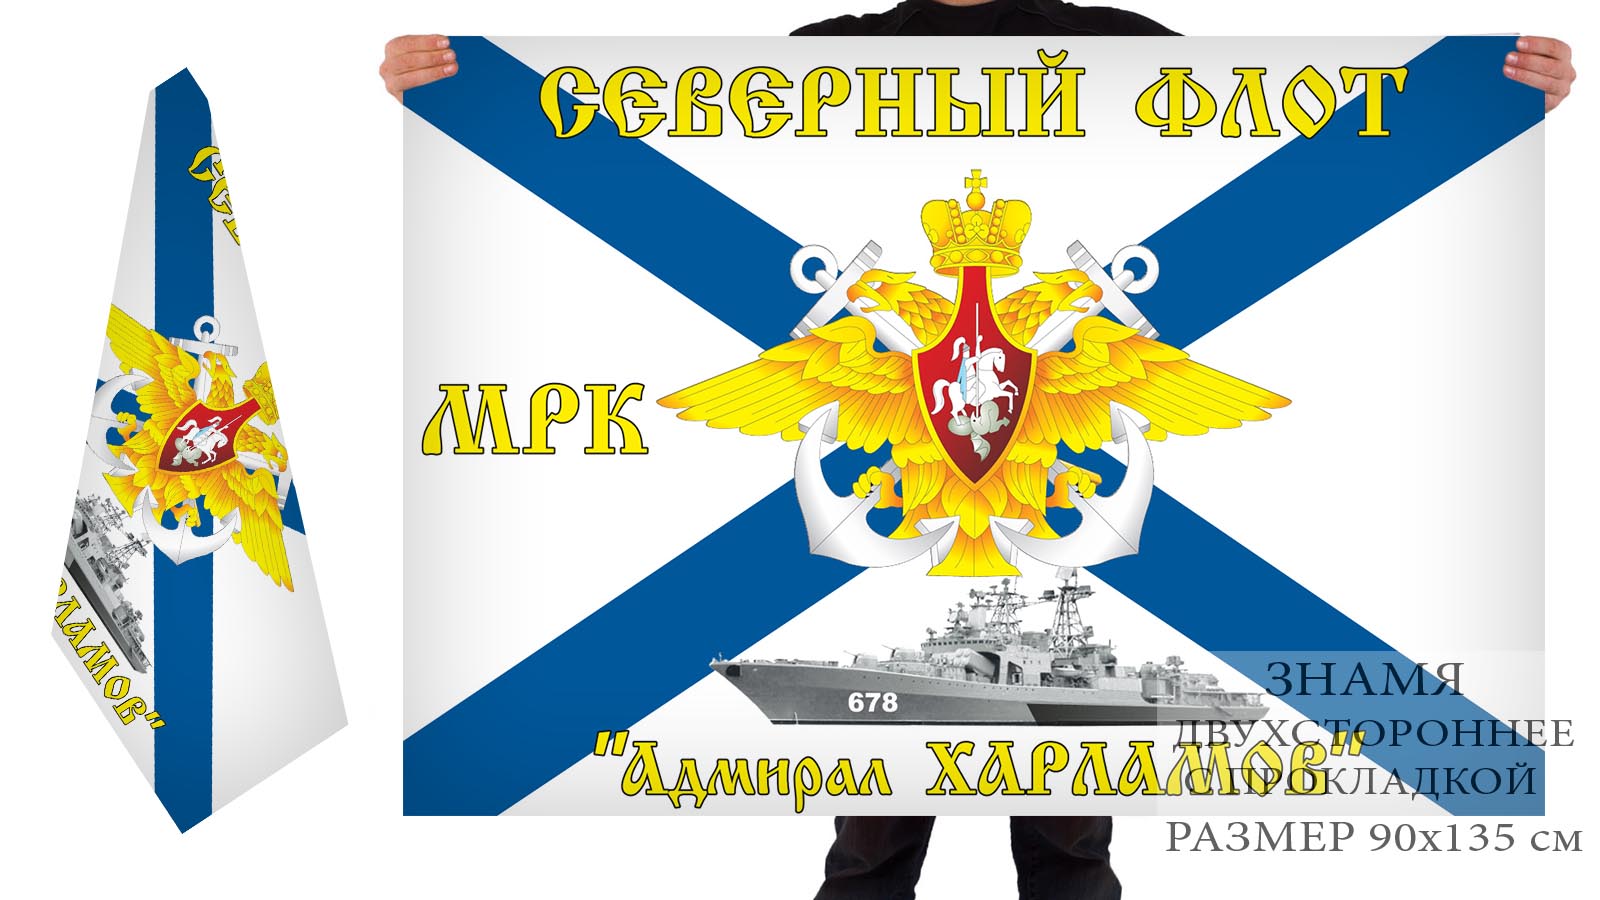 Двусторонний флаг Северного Флота ВМФ МРК "Адмирал Харламов"